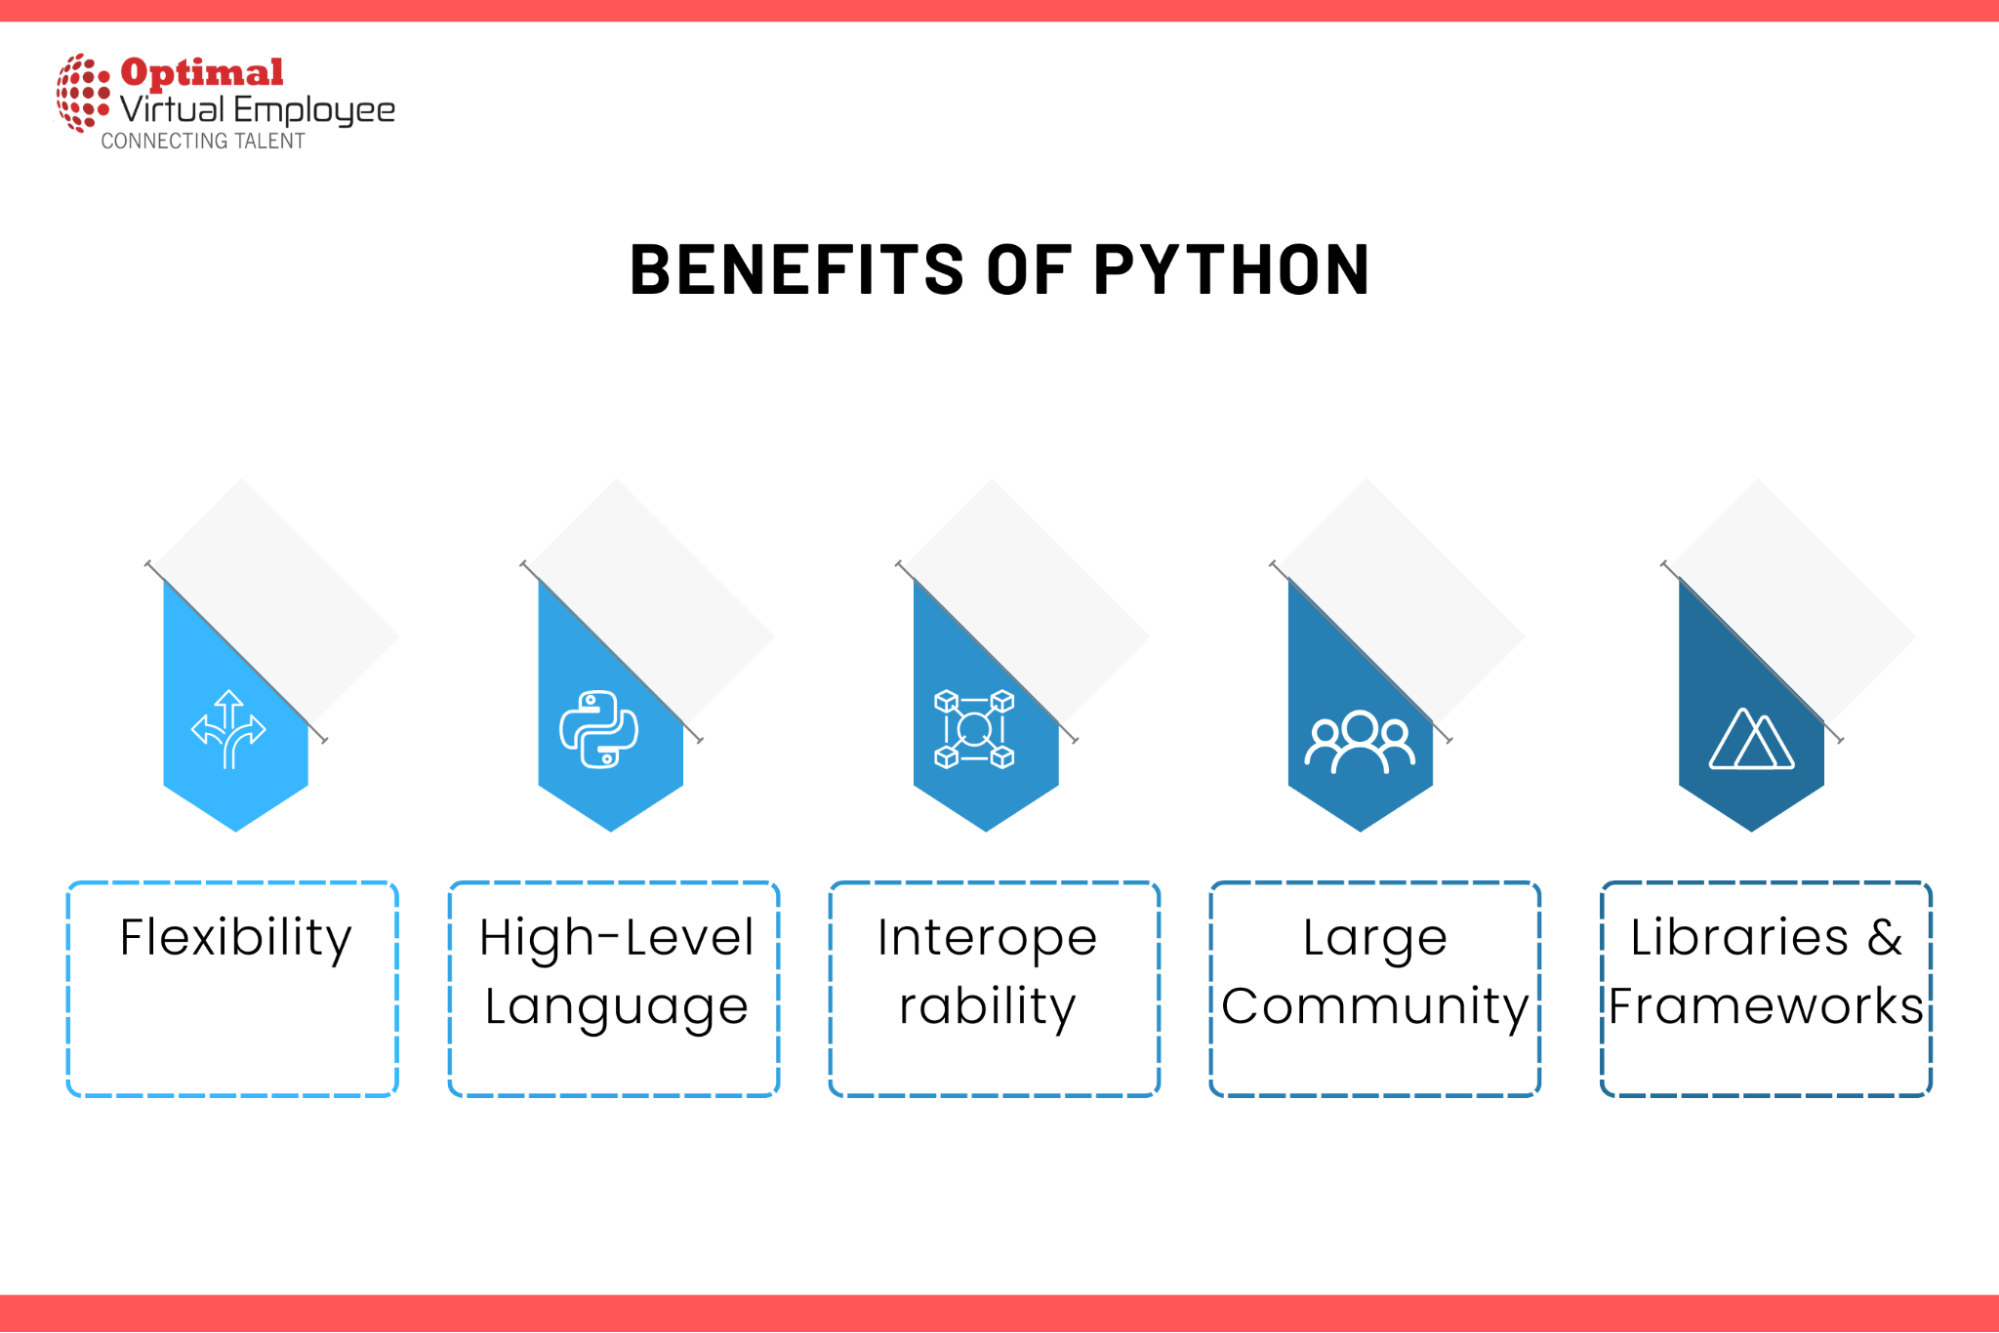 Key Benefits of Python